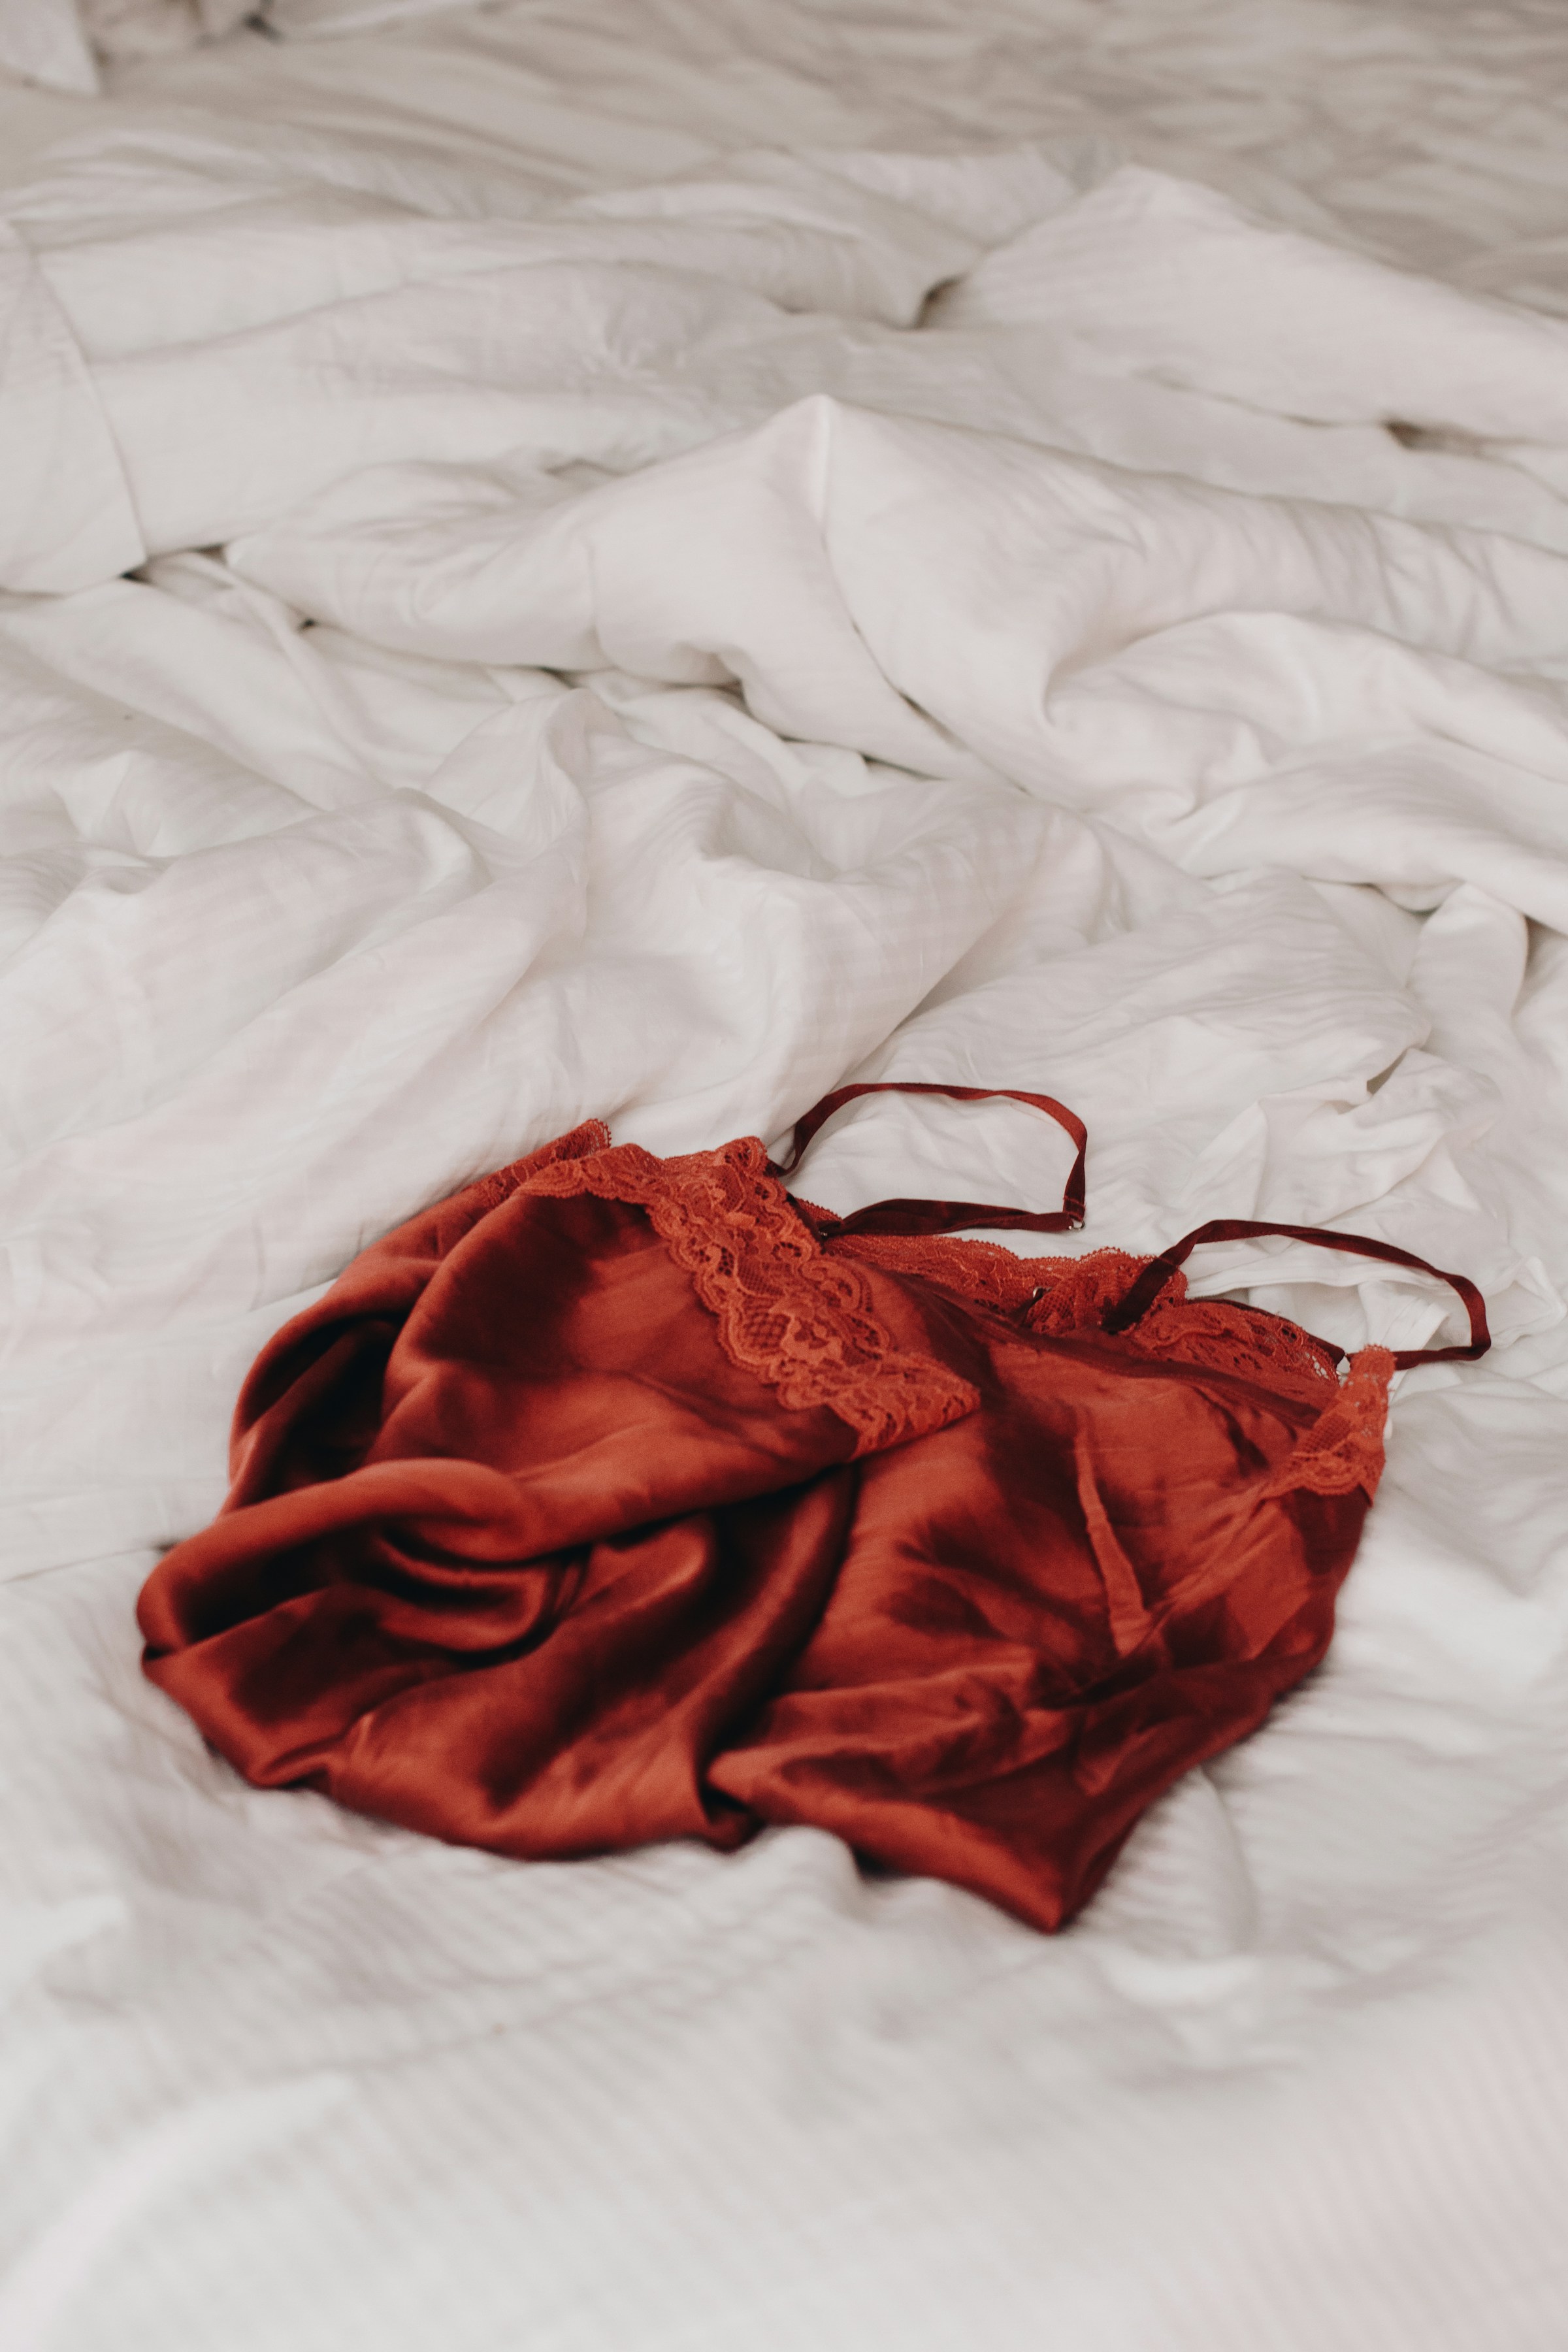 Lingerie rouge à lacets posée sur des draps blancs en lin | Source : Unsplash